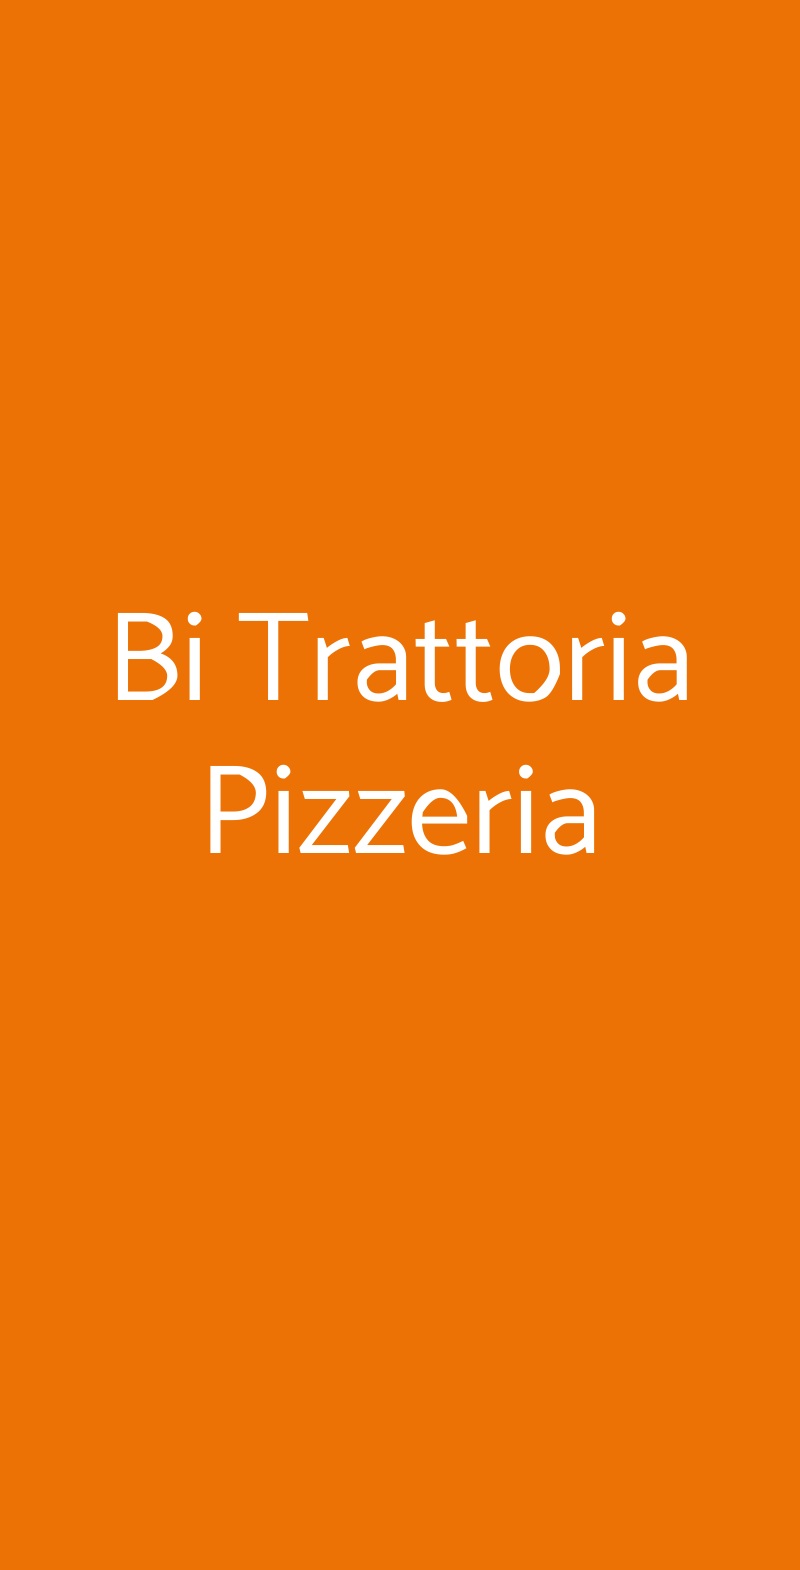 Bi Trattoria Pizzeria Roma menù 1 pagina